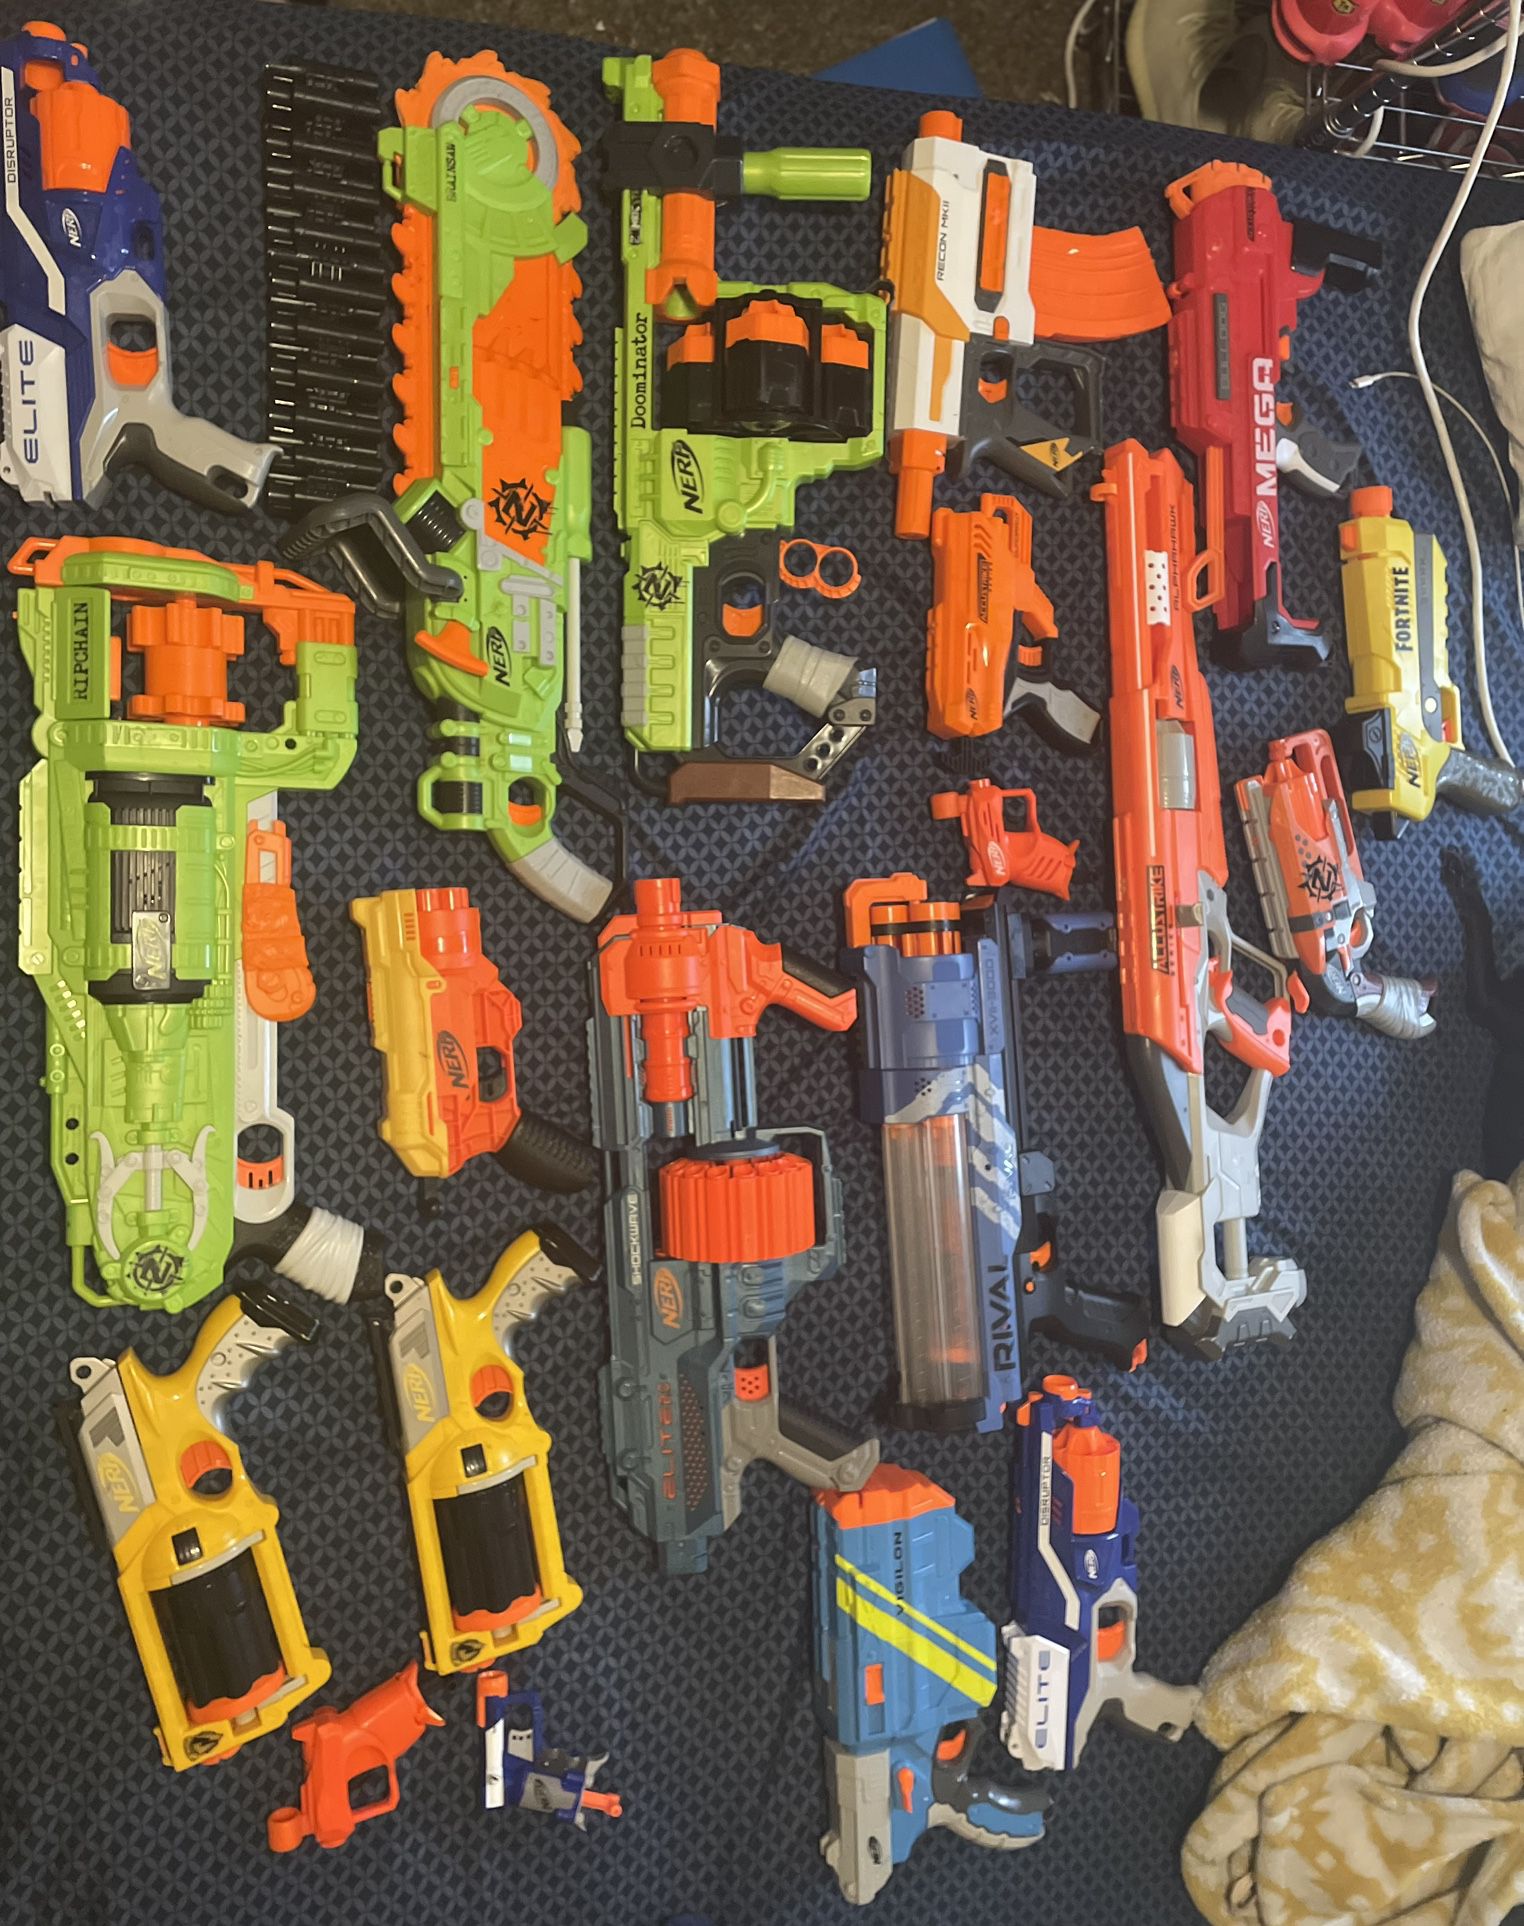 NERF GUNS $80 For All!!